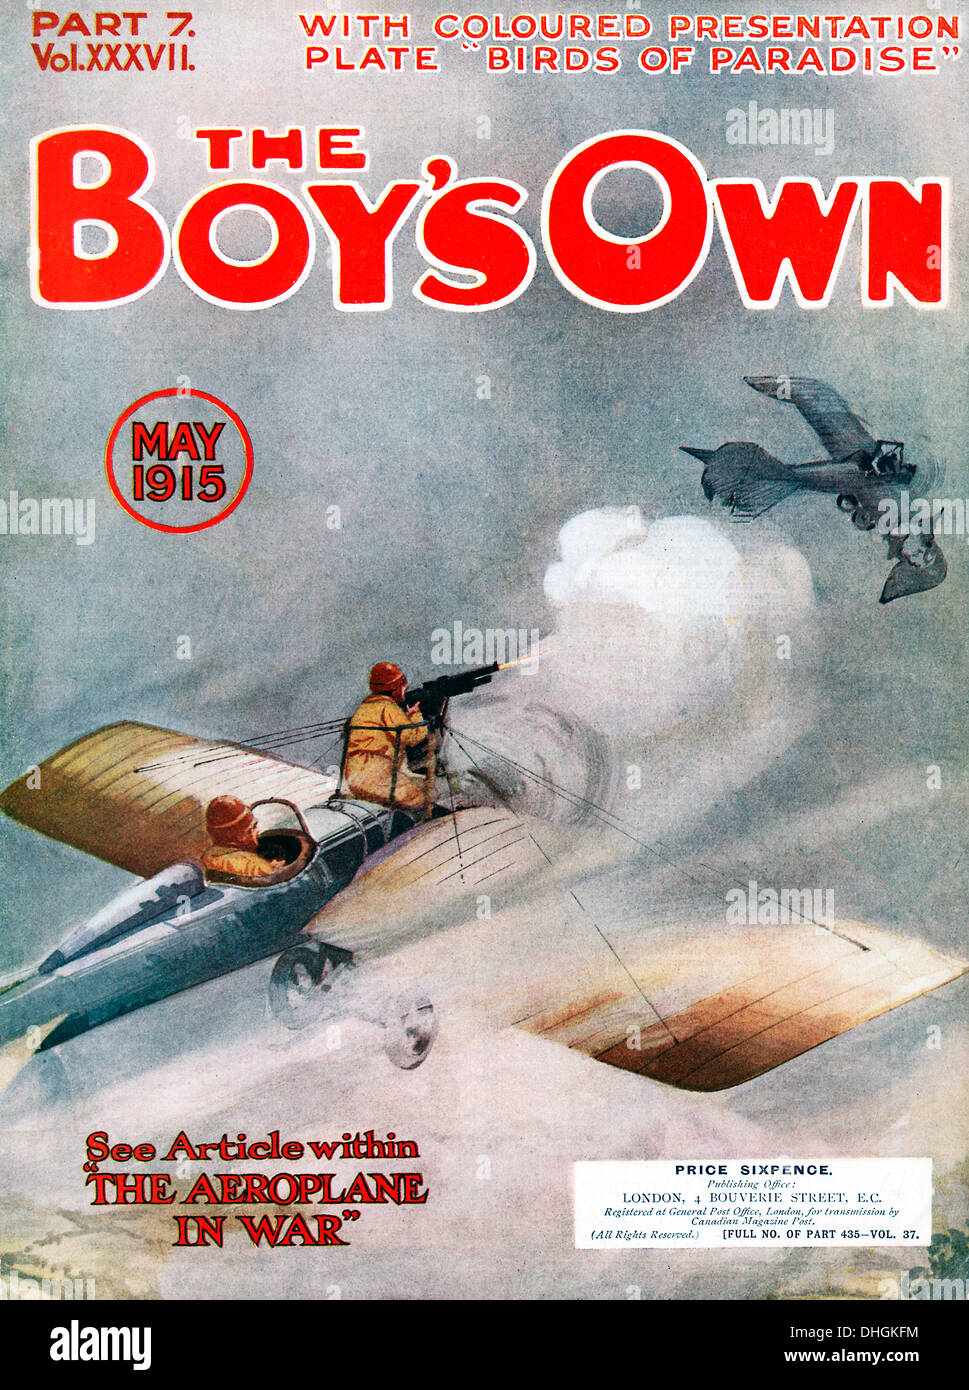 Jungen eigenen Papier, Luftkampf, 1915 Cover des Magazins mit einem Problem auf dem Flugzeug im Krieg - sehr frühen Krieg in der Luft Stockfoto